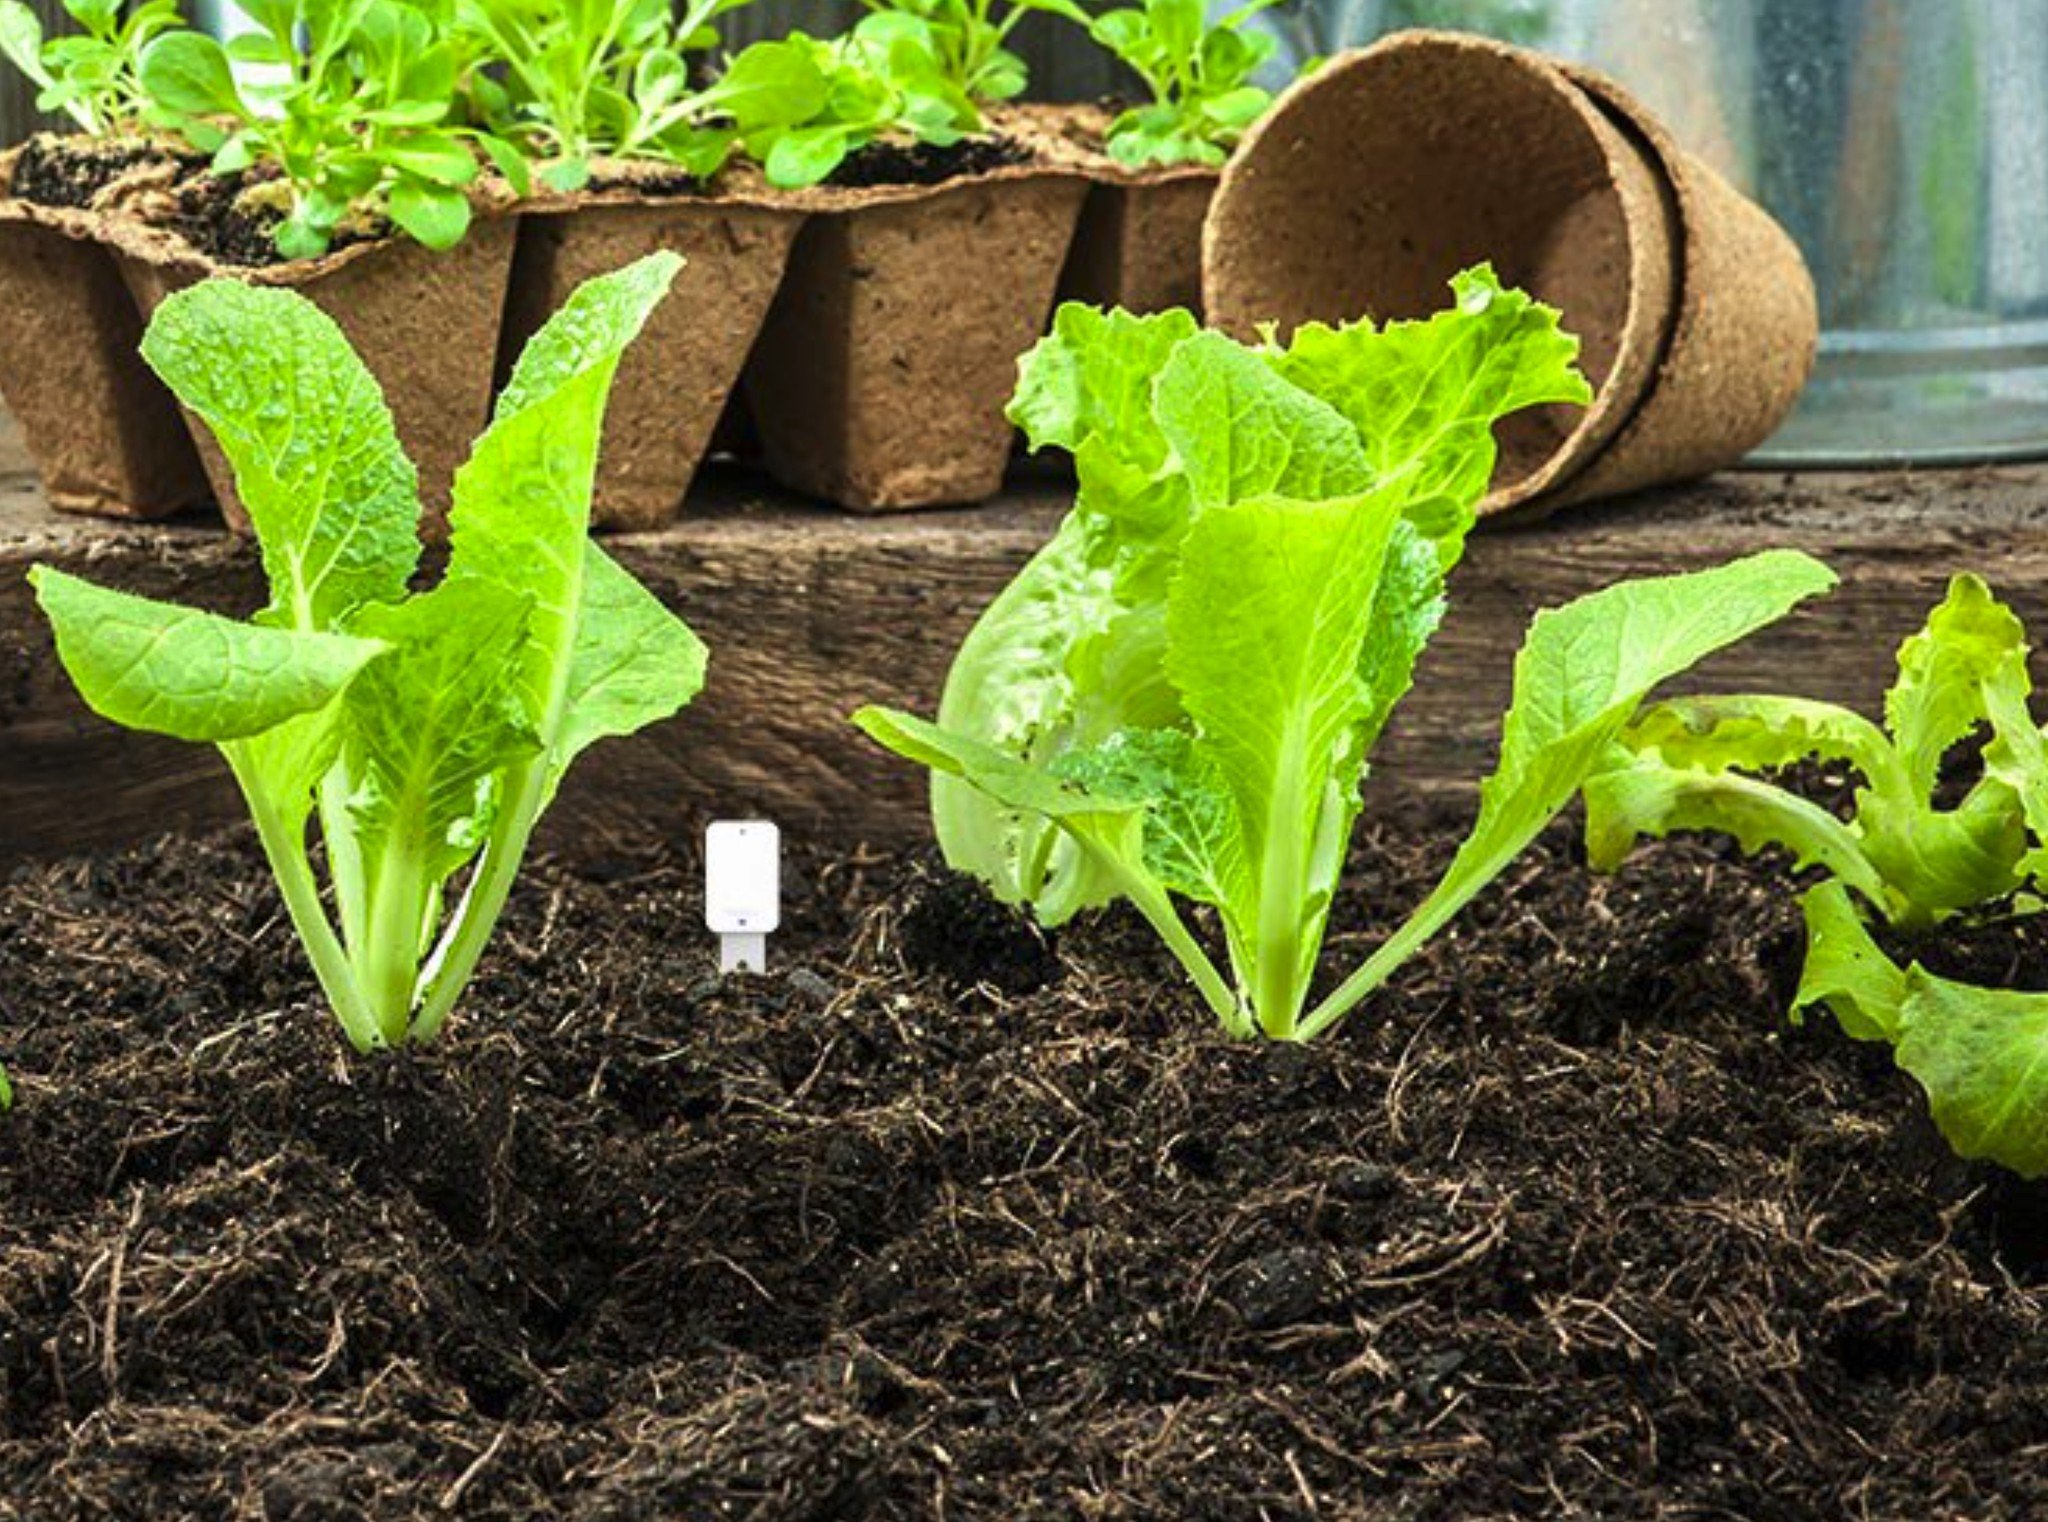 Votion Soil Sensor installed in a garden